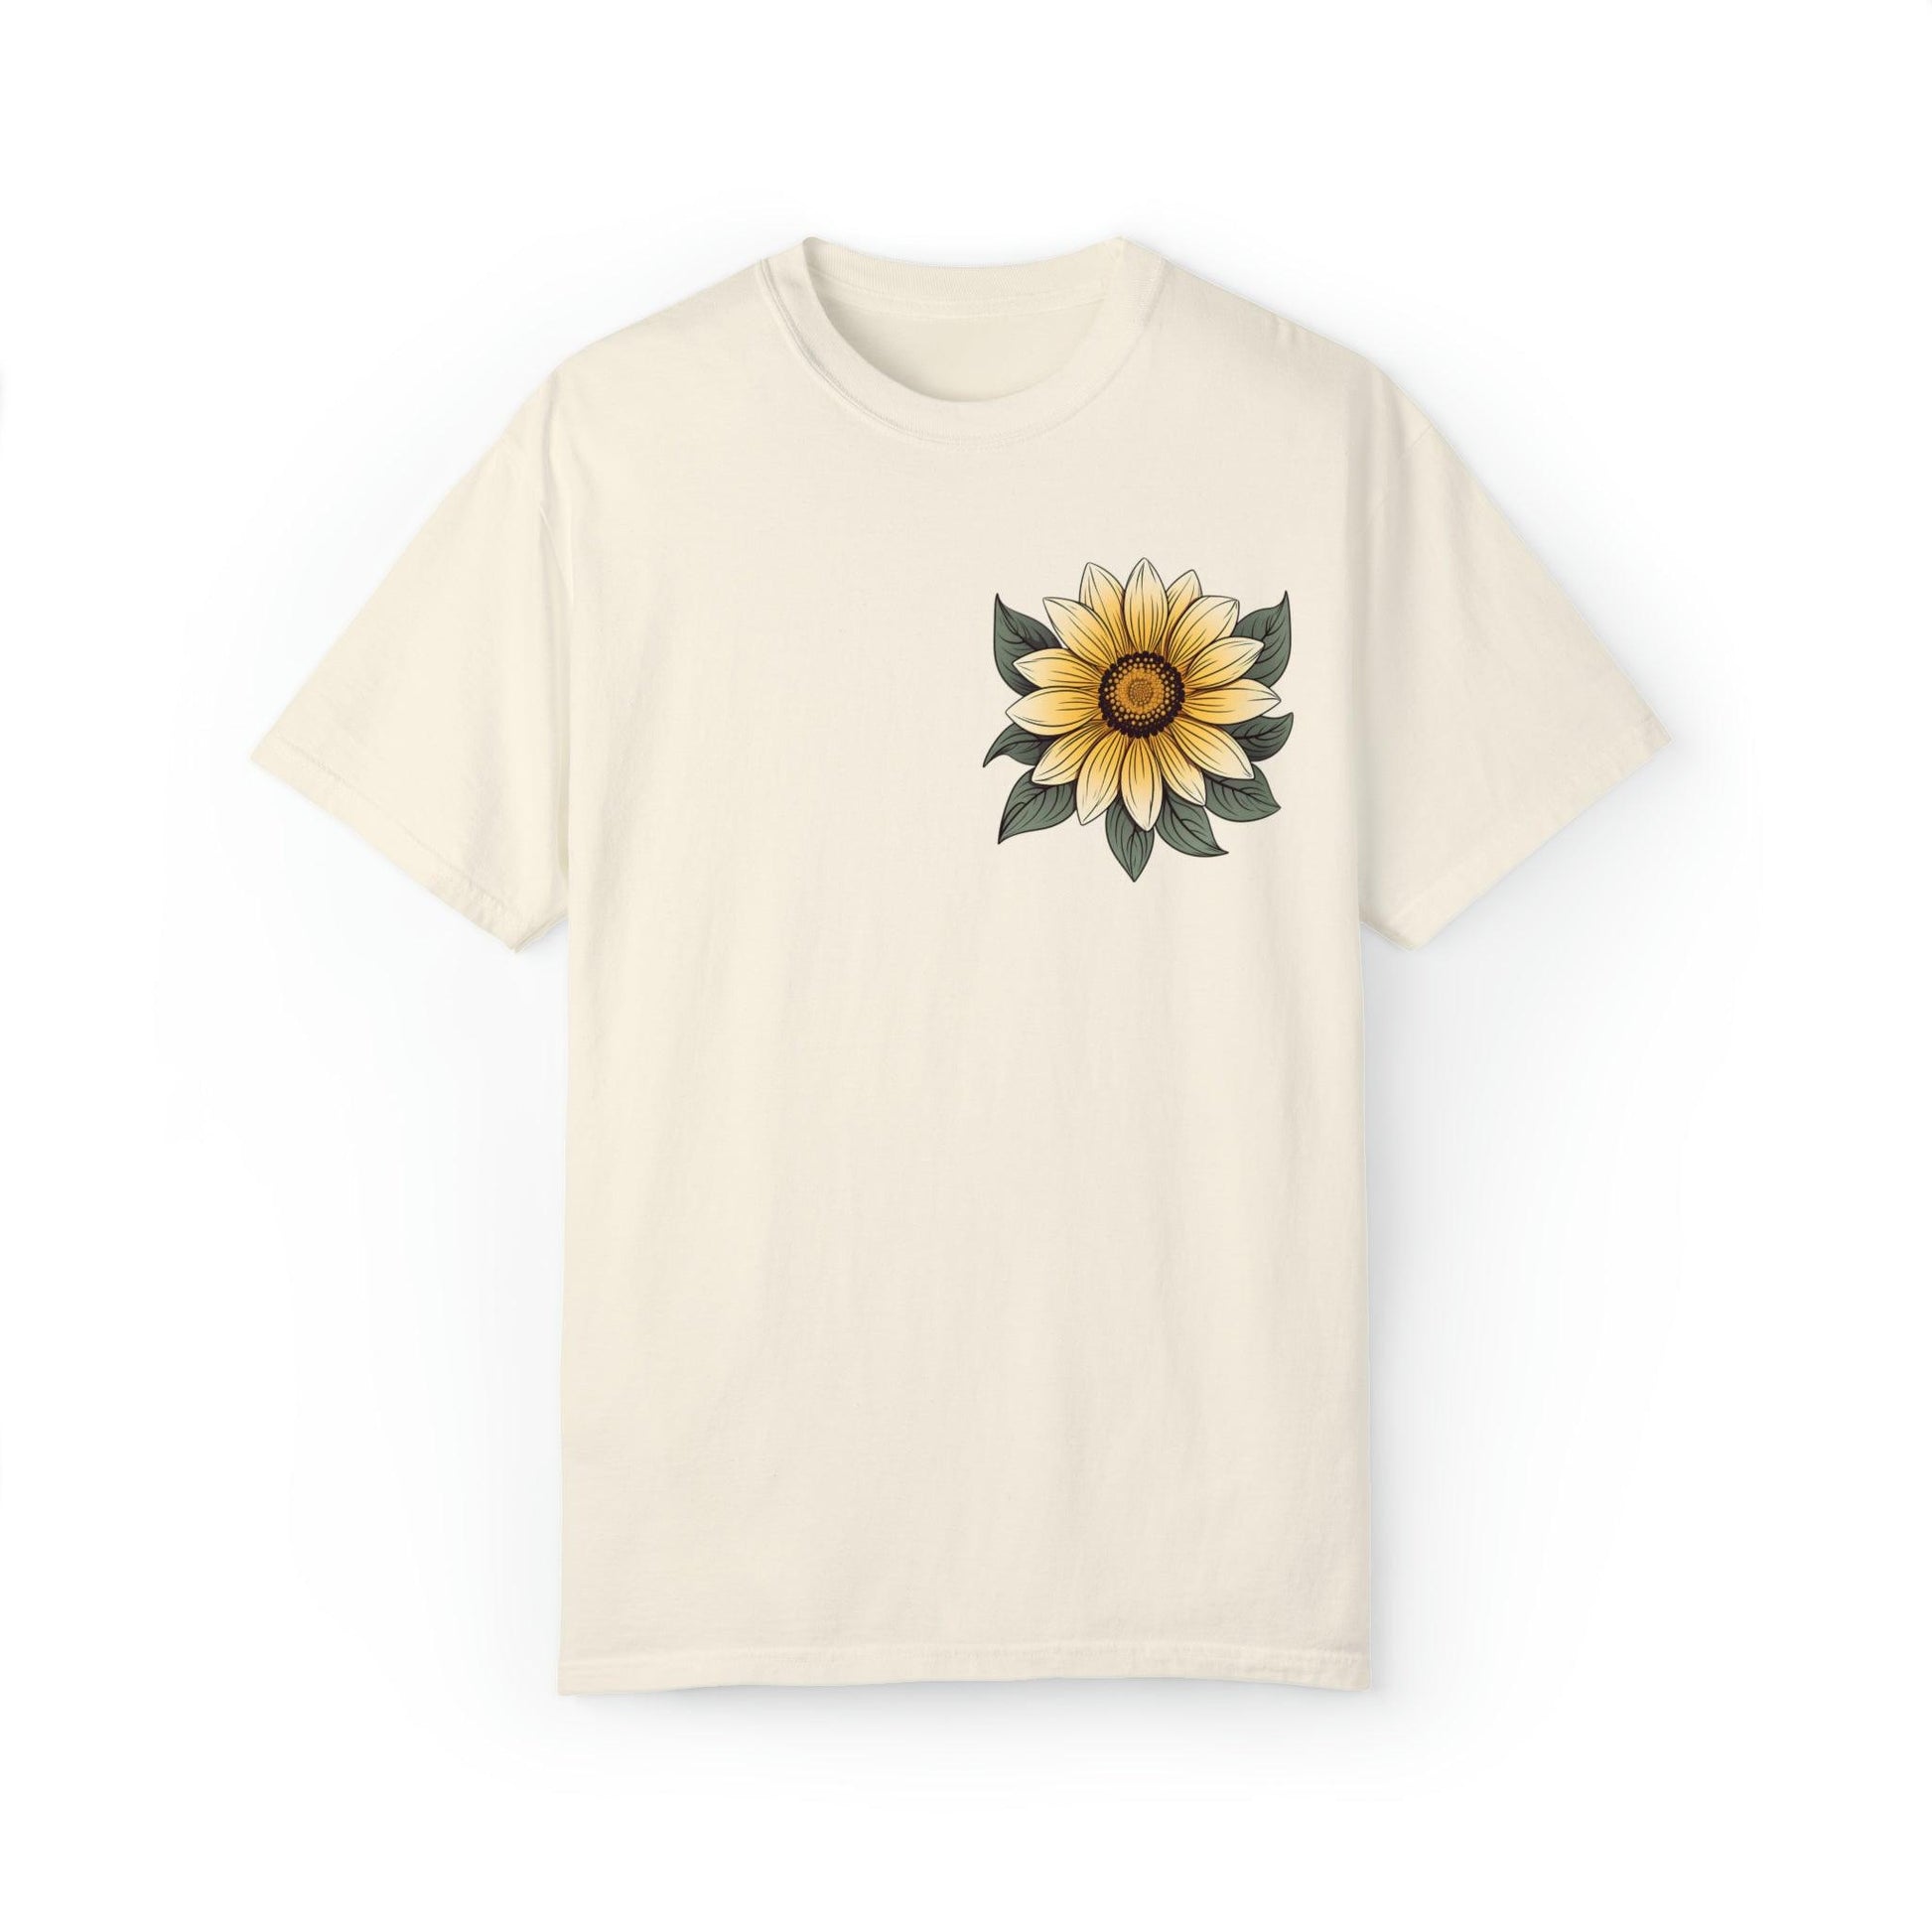 Sunflower Shirt Women Flower Shirt Aesthetic, Floral Graphic Tee Floral Shirt Flower T-shirt, Wild Flower Shirt Gift For Her Wildflower T-shirt - Giftsmojo